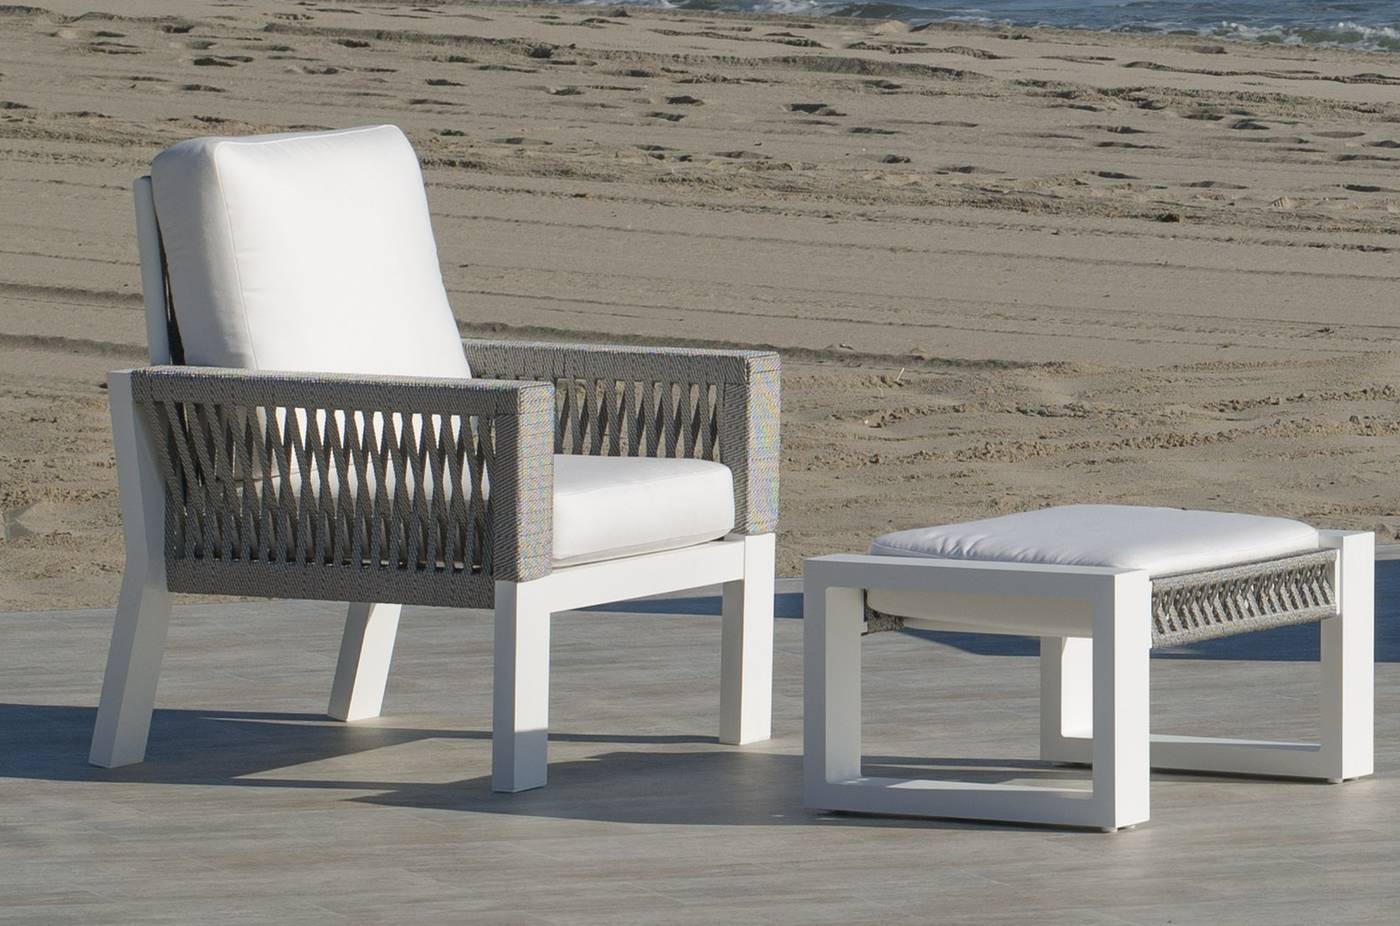 Set Aluminio Estambul-9 - Conjunto aluminio-cuerda: 1 sofá de 2 plazas + 2 sillones + 1 mesa de centro + 2 taburetes + cojines. Disponible en color blanco, gris, marrón o champagne.